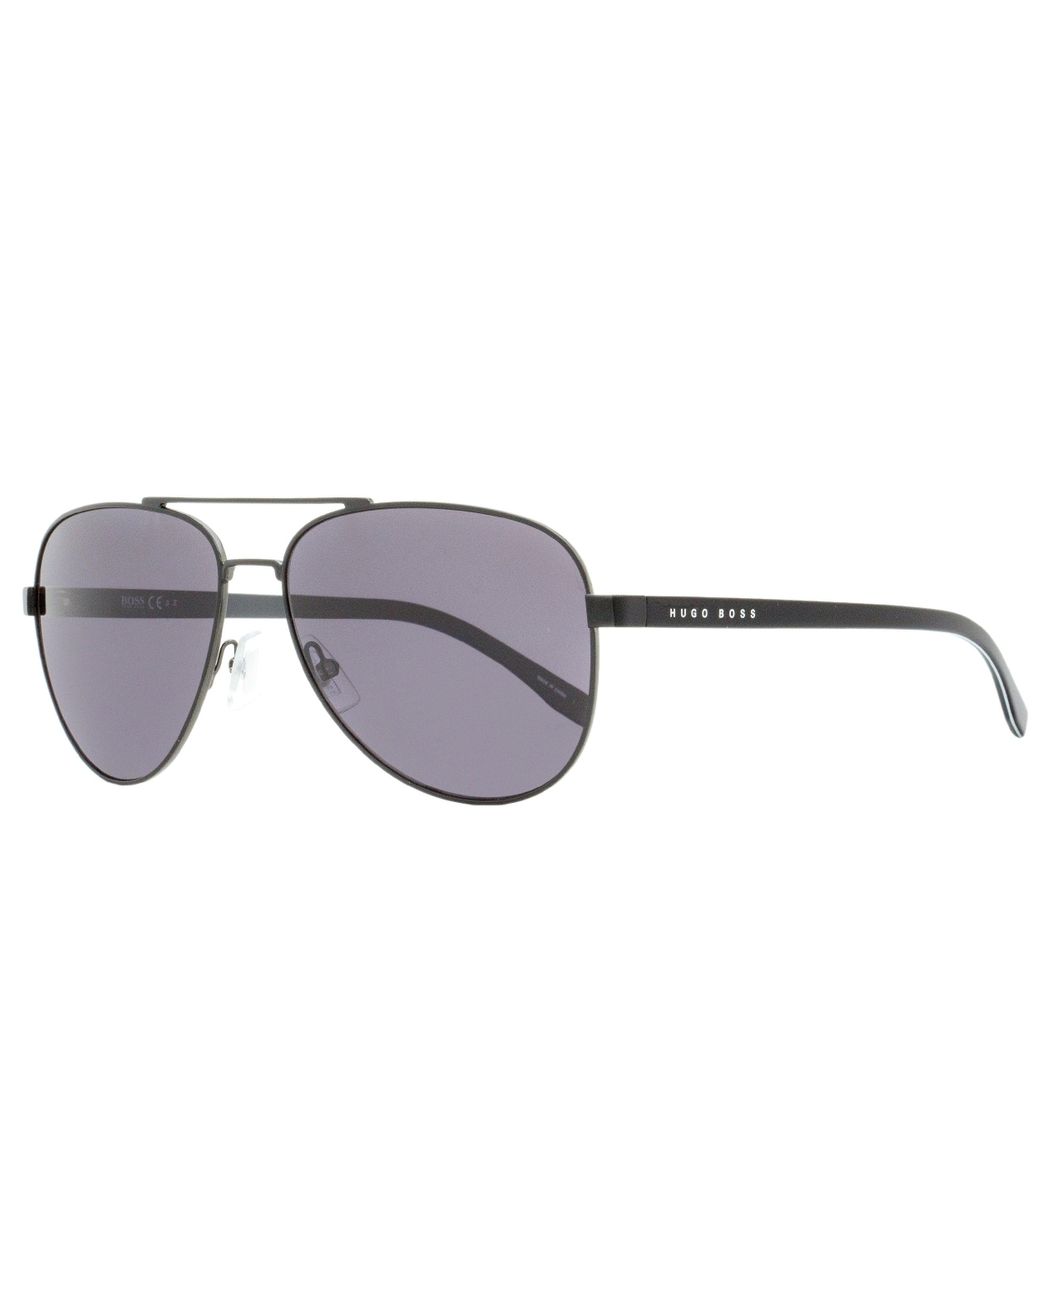 BOSS by HUGO BOSS Aviator Sunglasses B0761s Qil3h Matte/shiny Black 60mm  for Men | Lyst